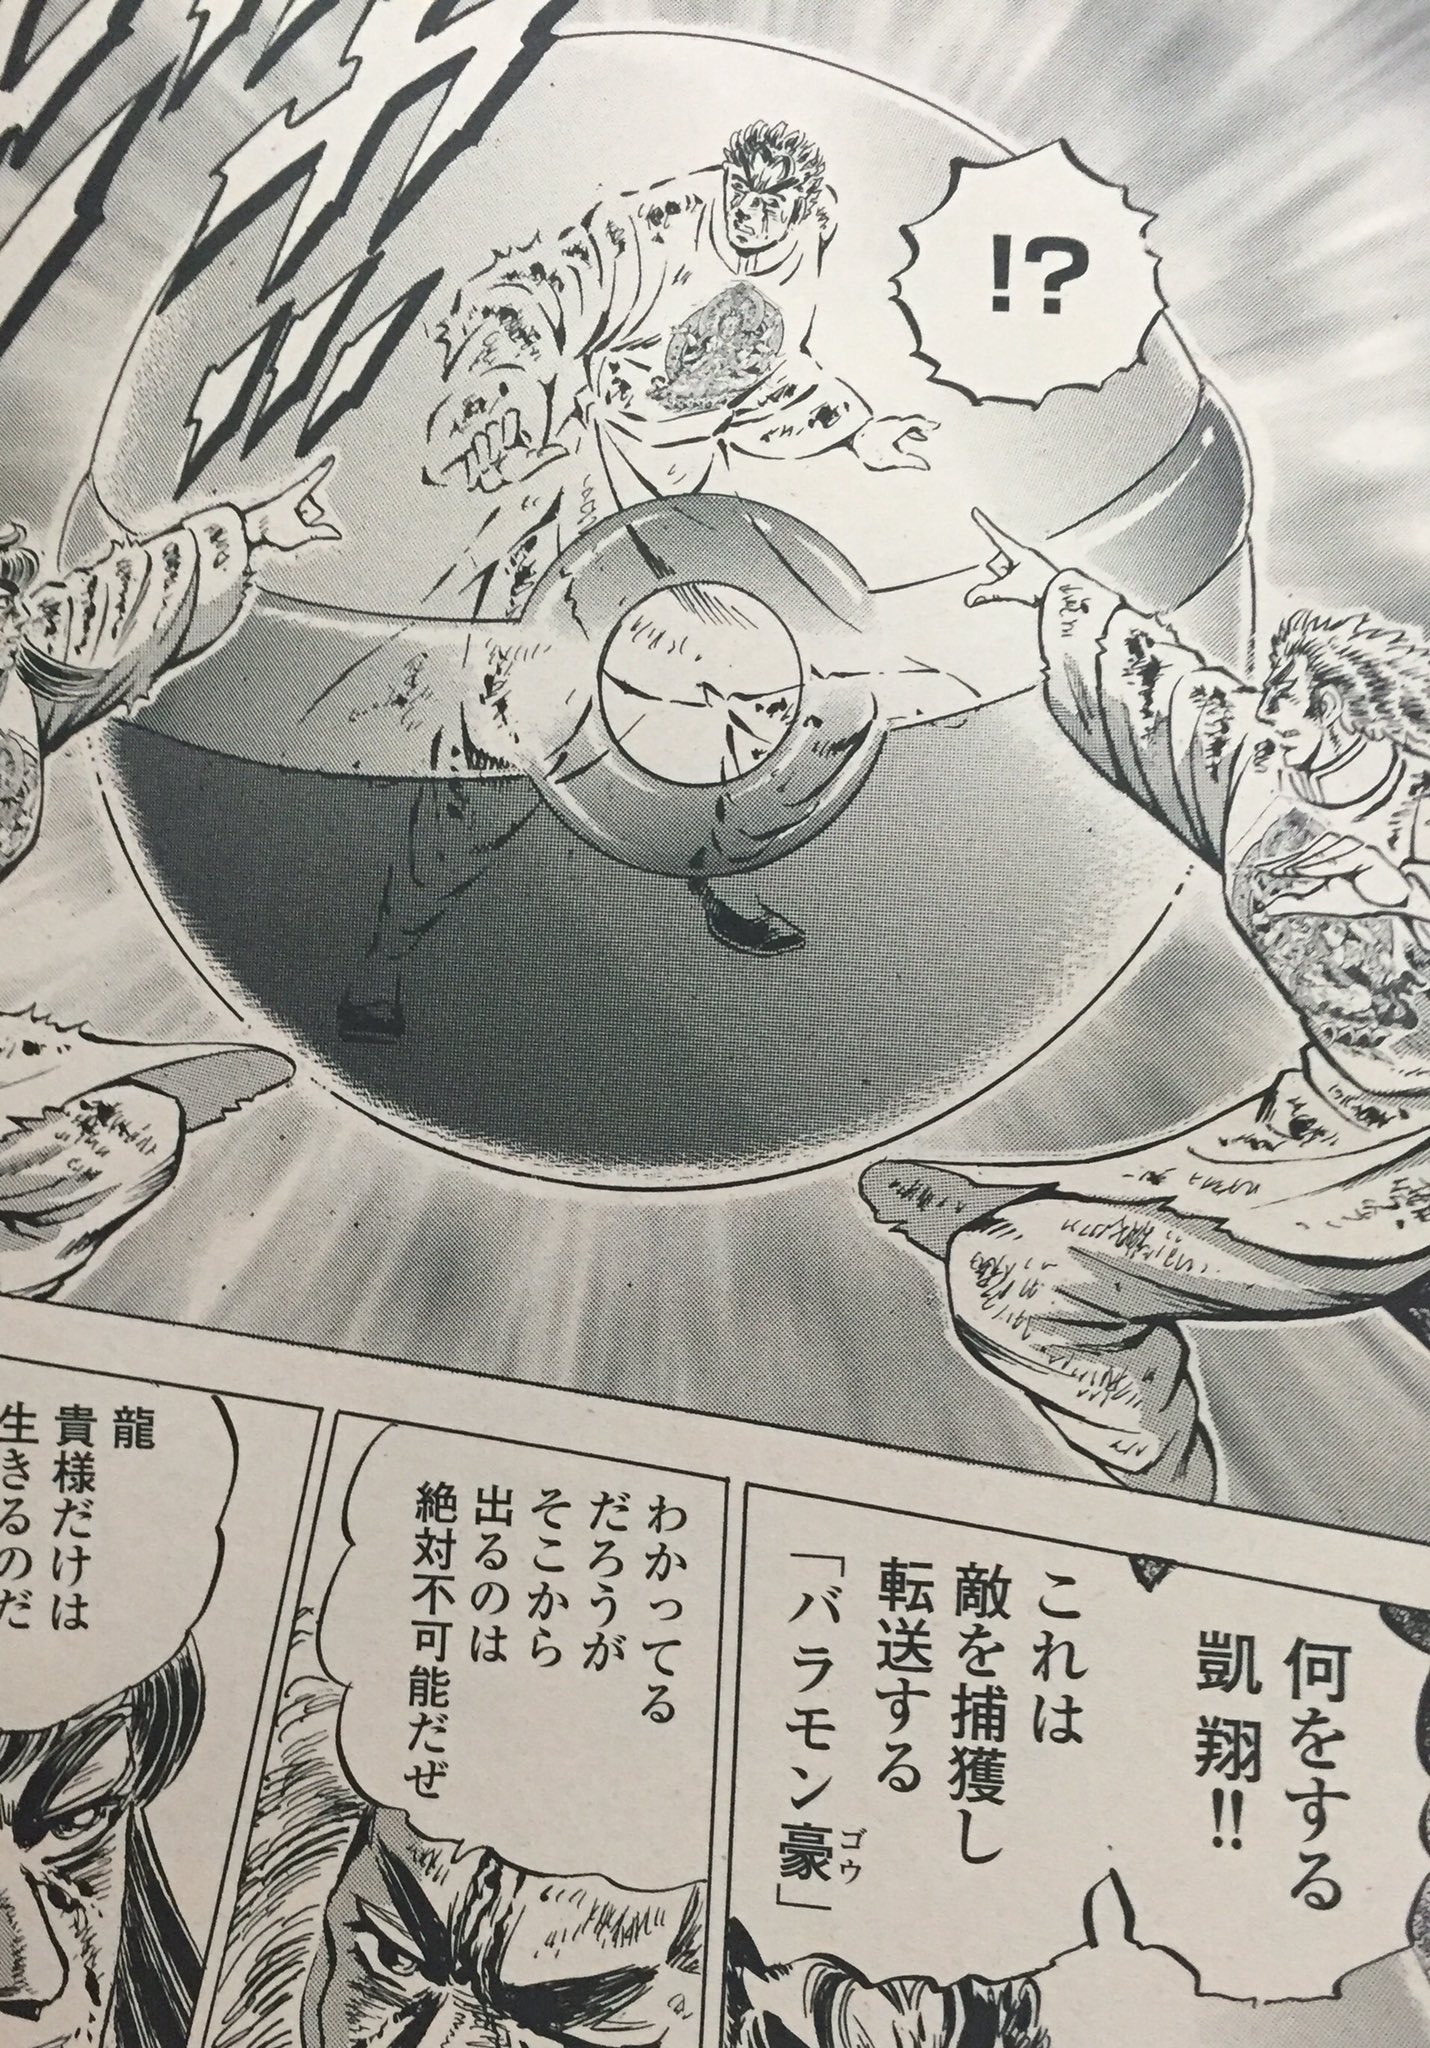 吉田光雄 漫画ゴラク 最新号 宮下あきら先生がさっそく 極 男塾 にポケモンgoを取り入れてました